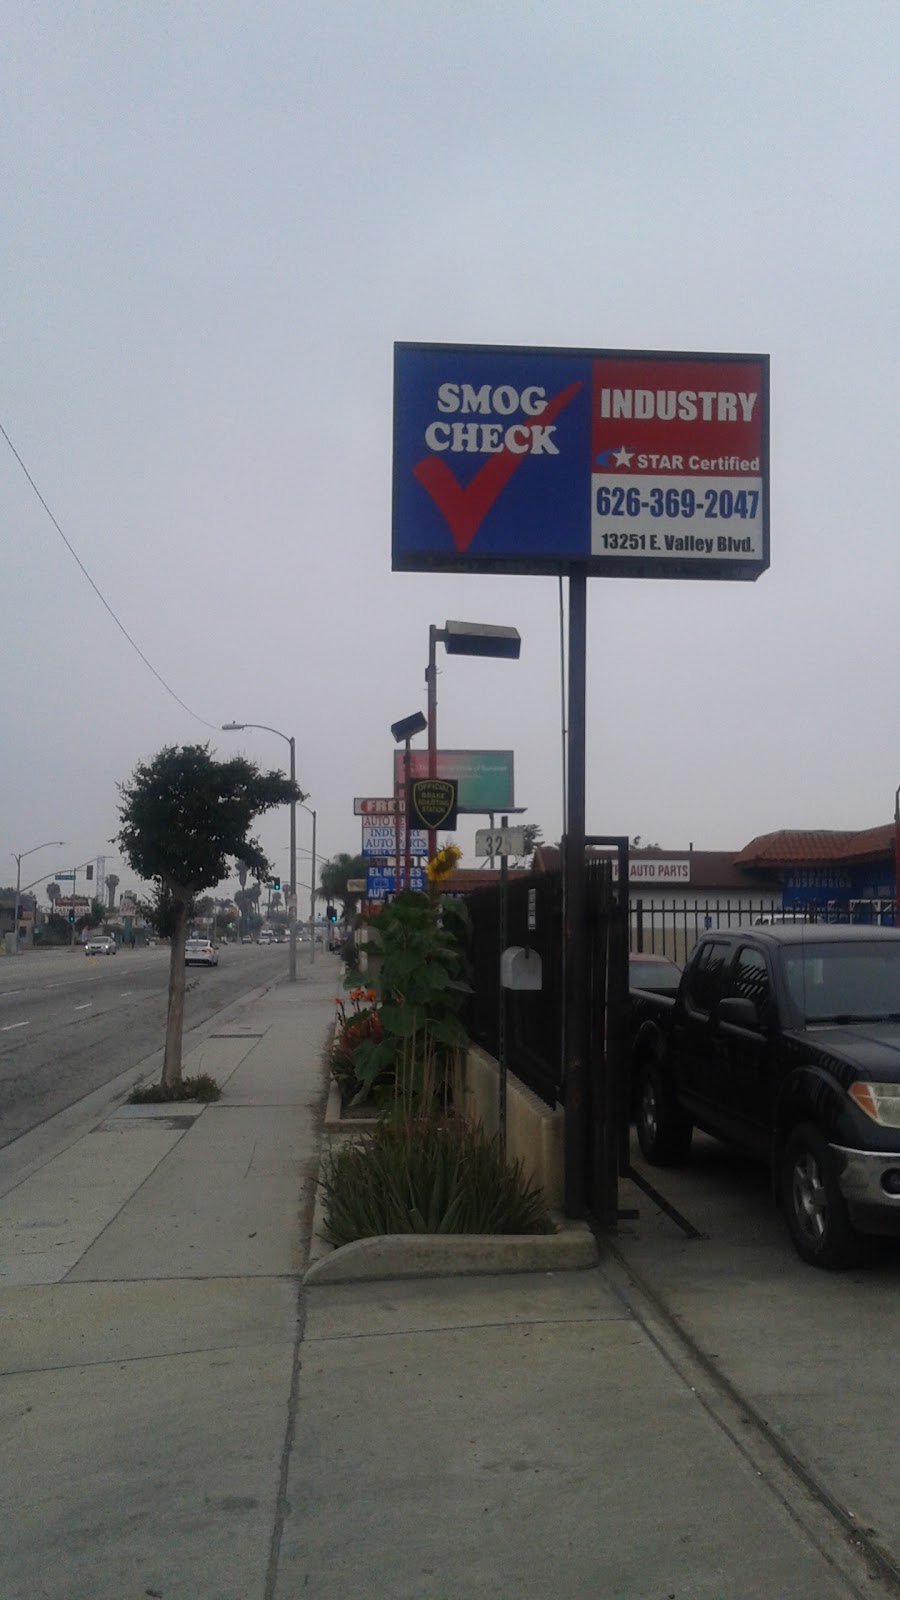 Industry Smog check | 13251 Valley Blvd, La Puente, CA 91746, USA | Phone: (626) 369-2047